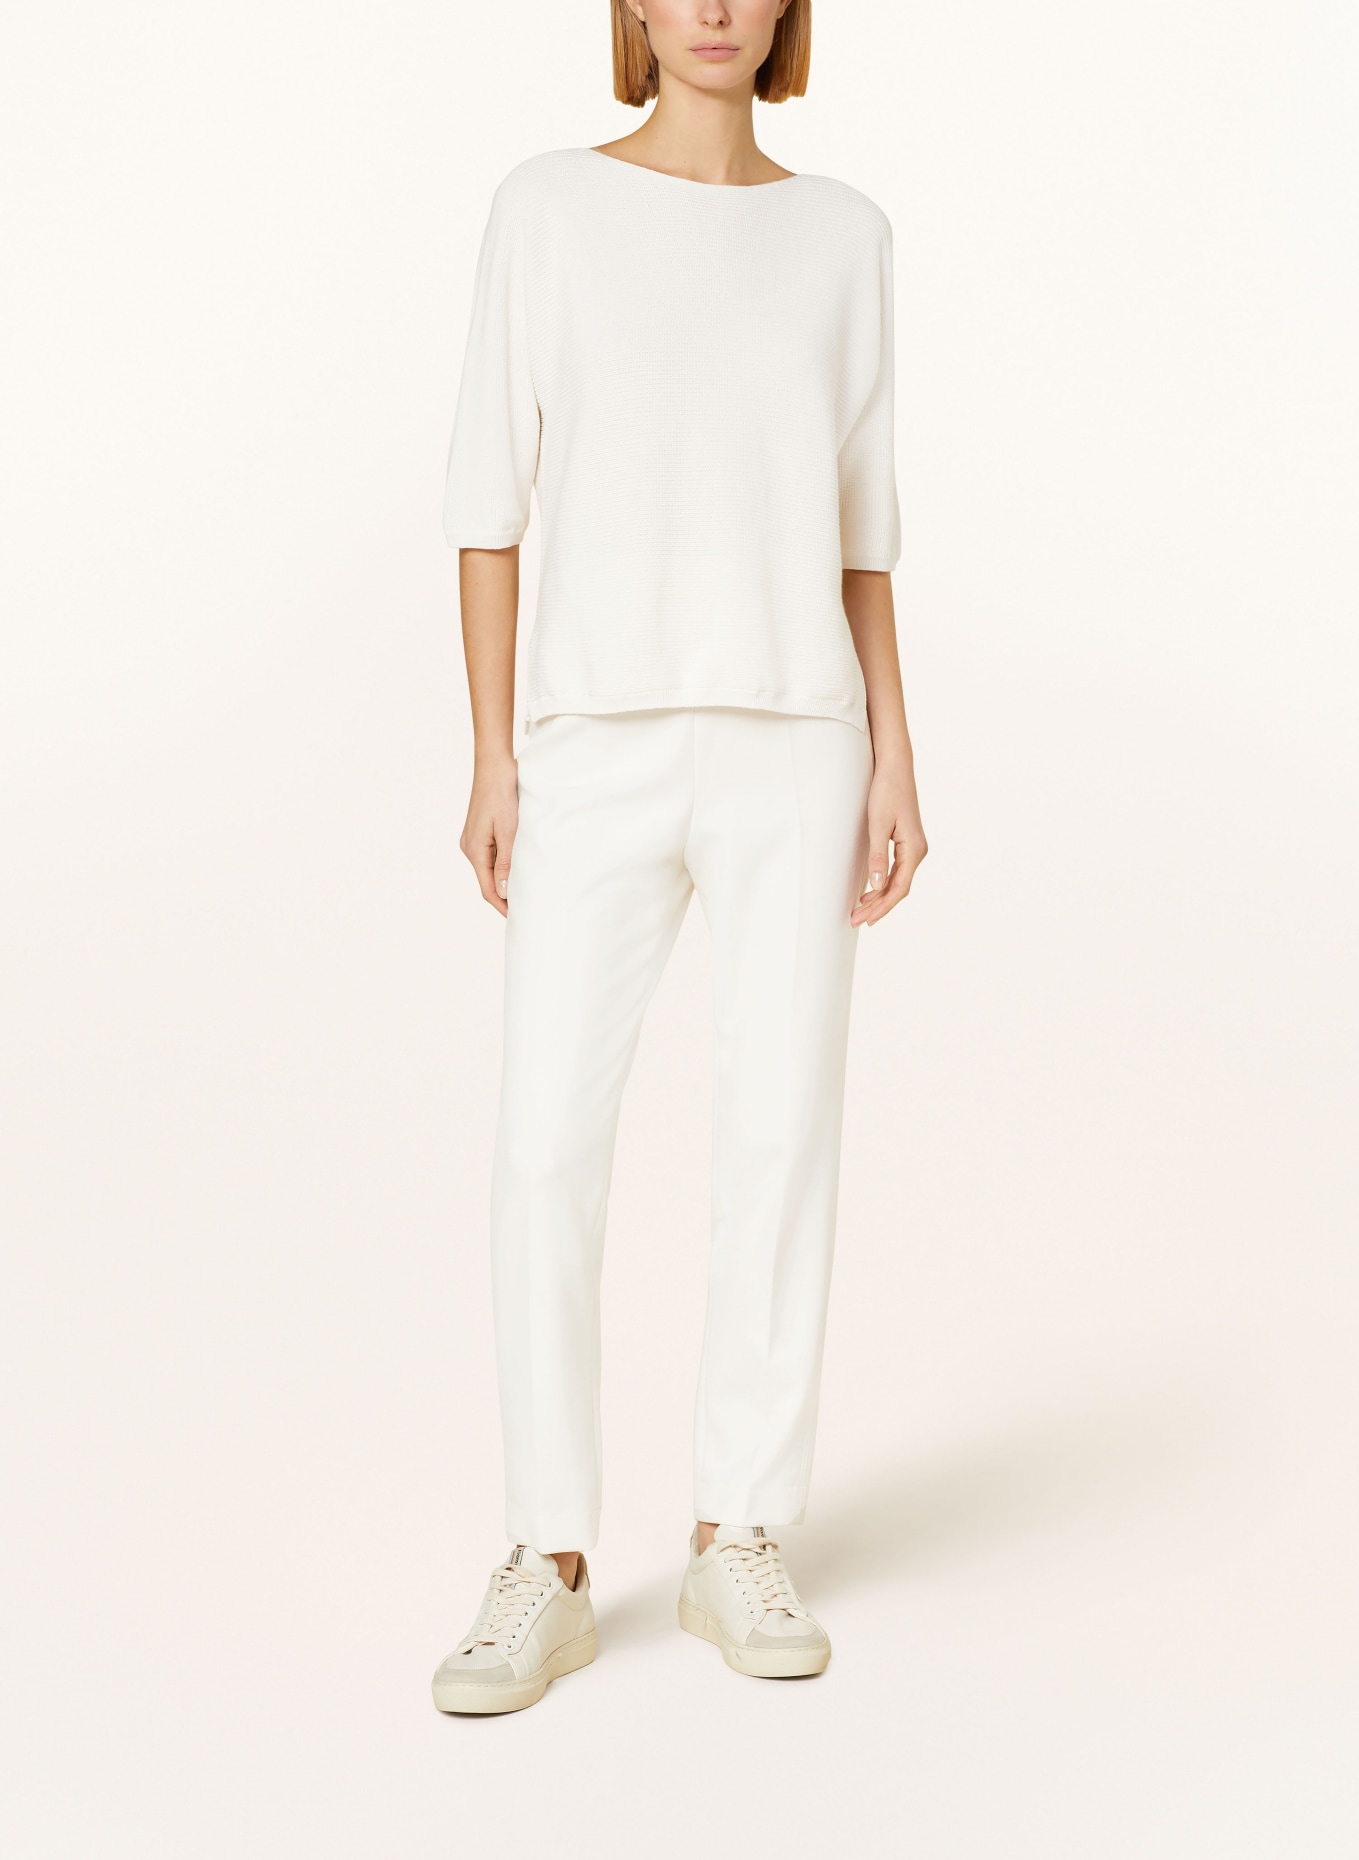 HEMISPHERE Pullover mit 3/4-Arm, Farbe: 1001 white weiss (Bild 2)